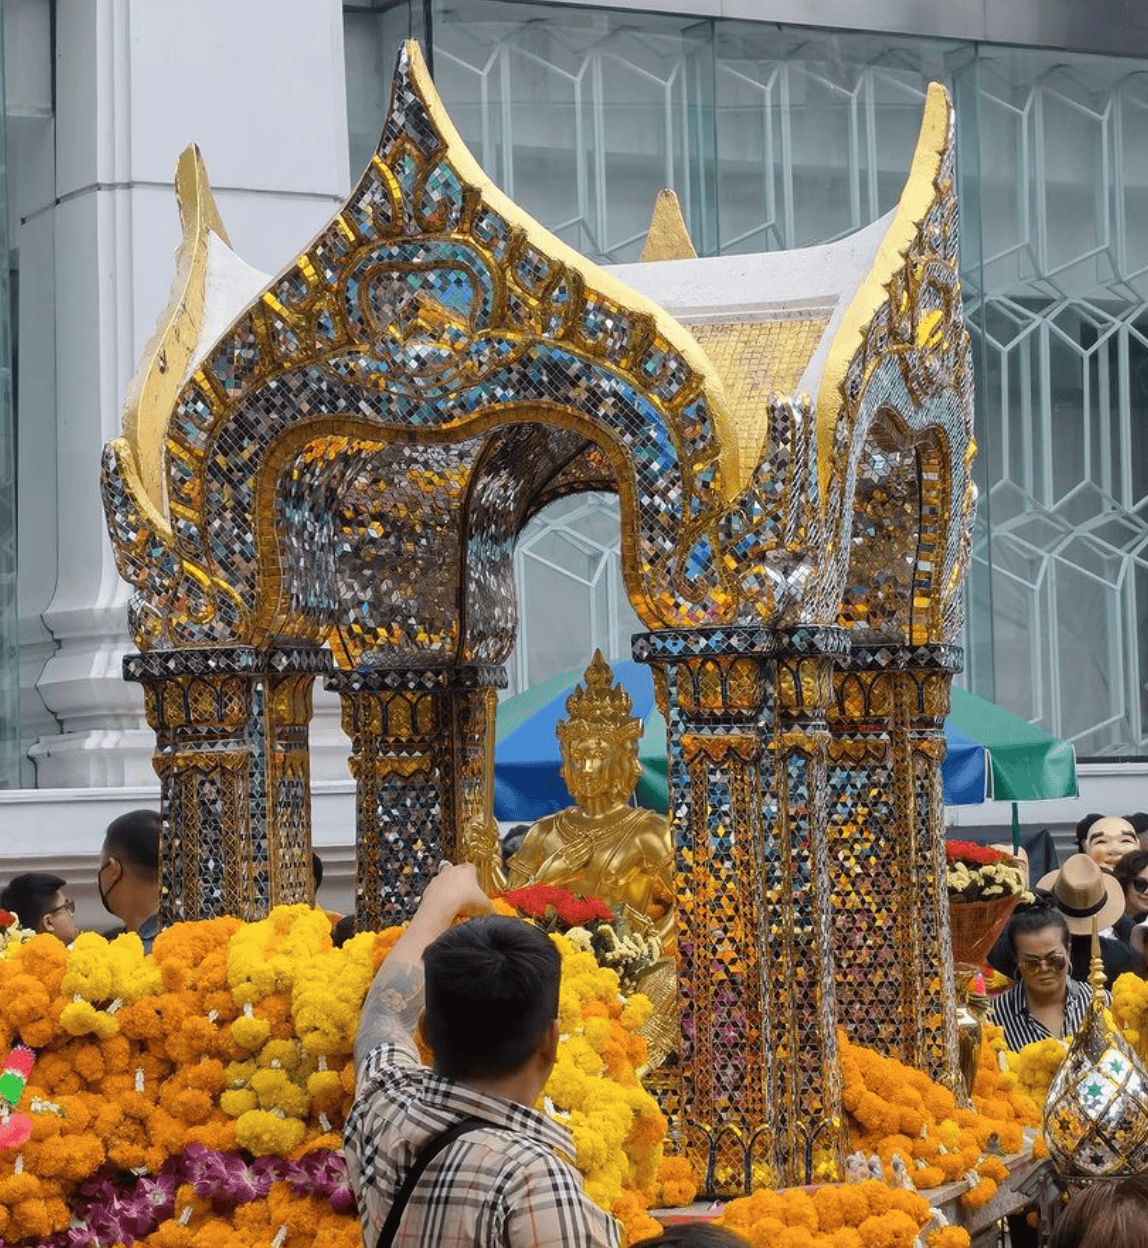 free things to do in bangkok - erawan shrine